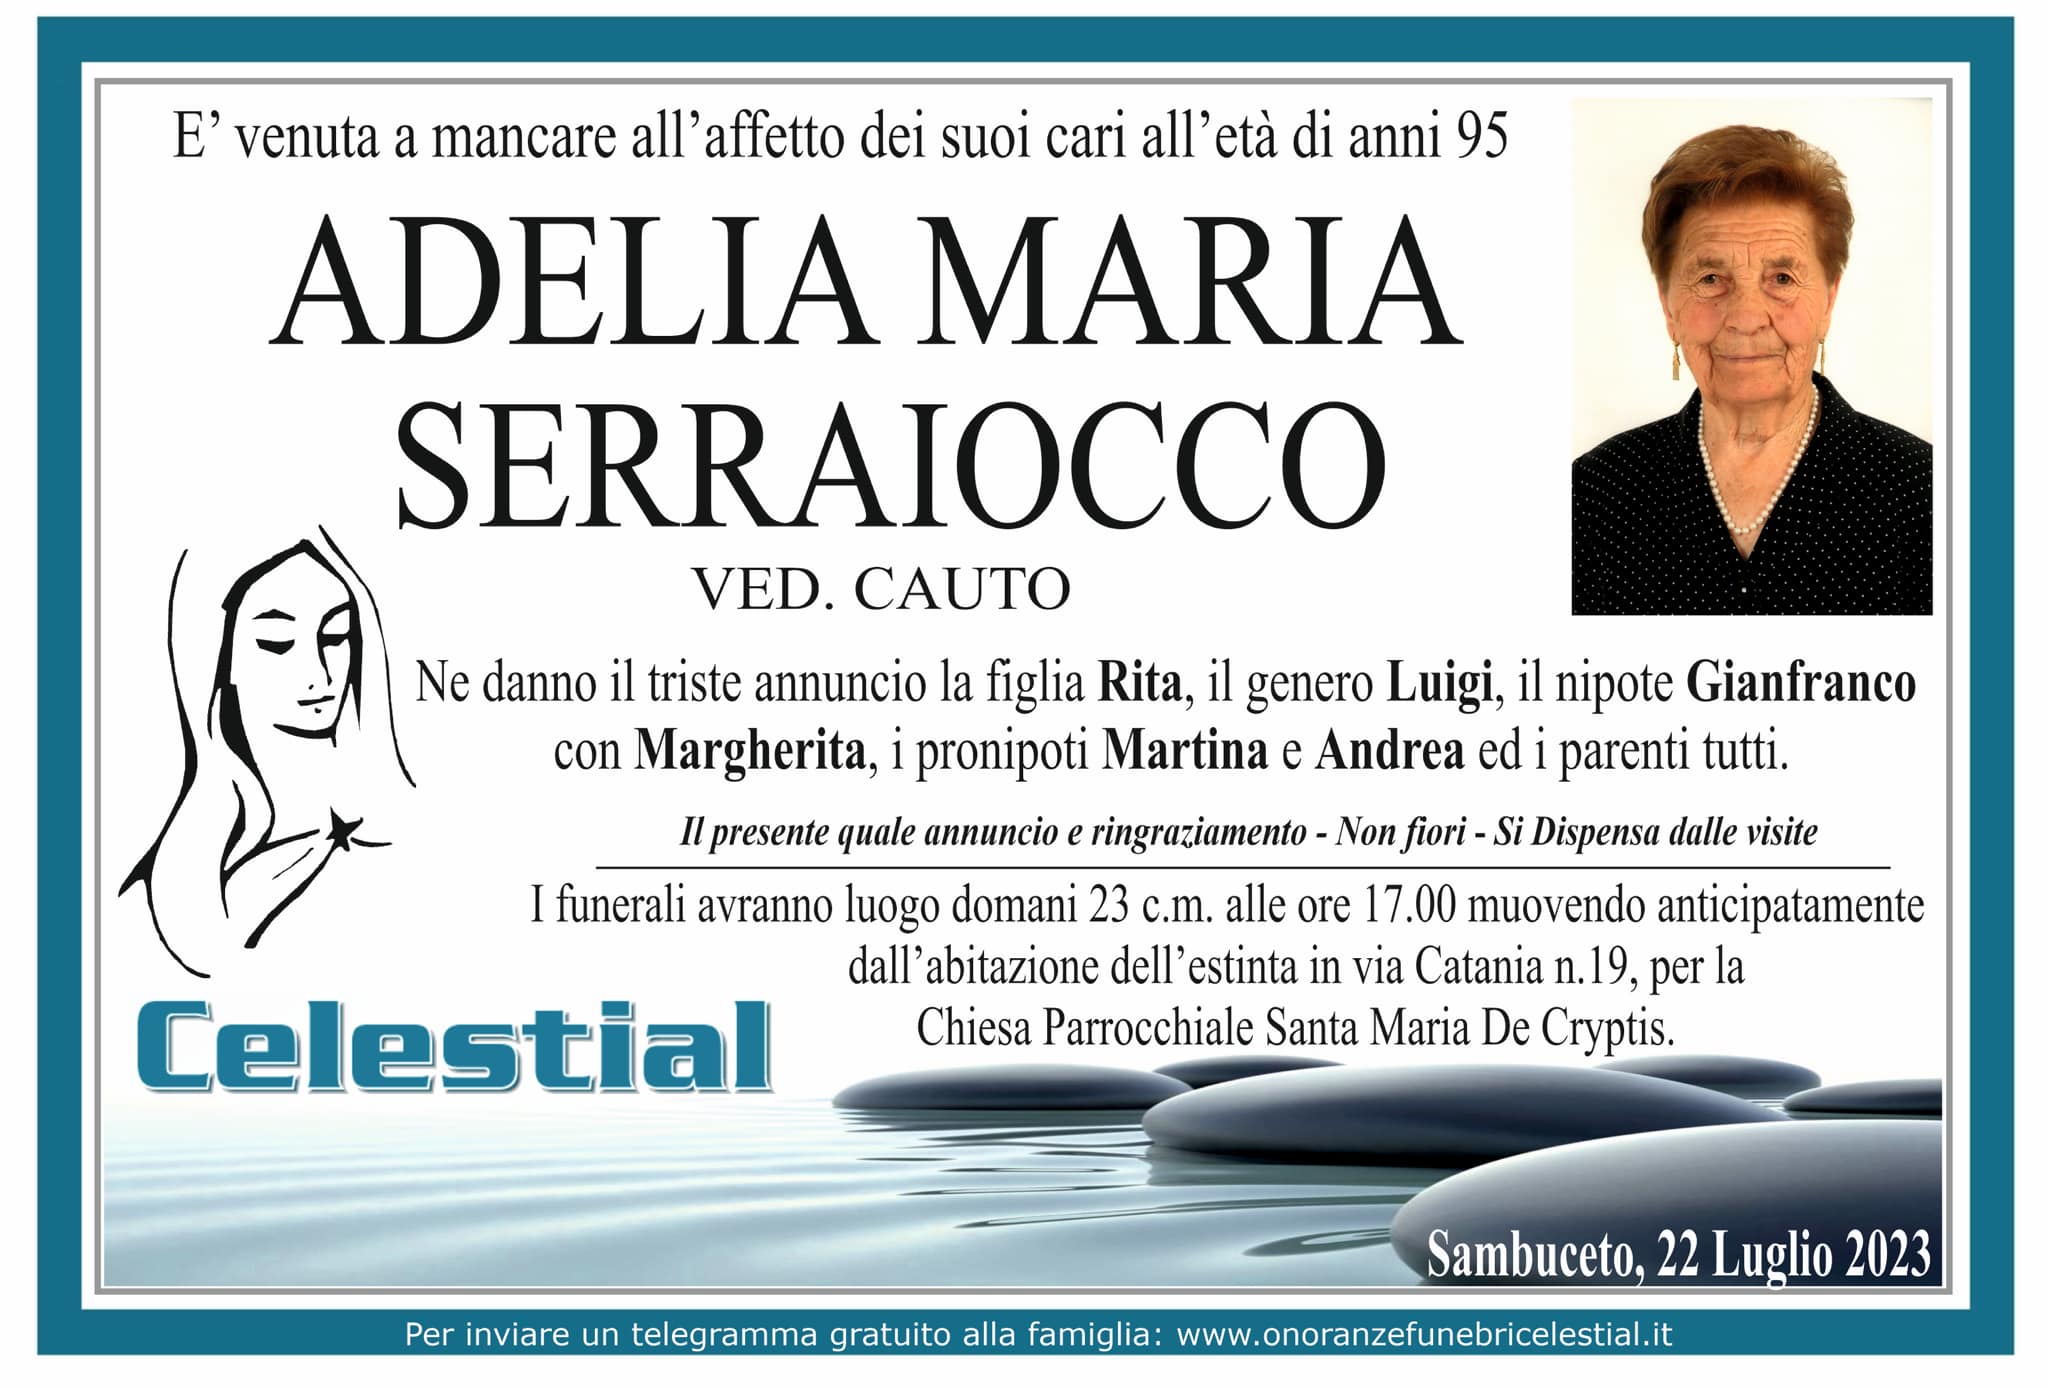 Adelia Maria Serraiocco